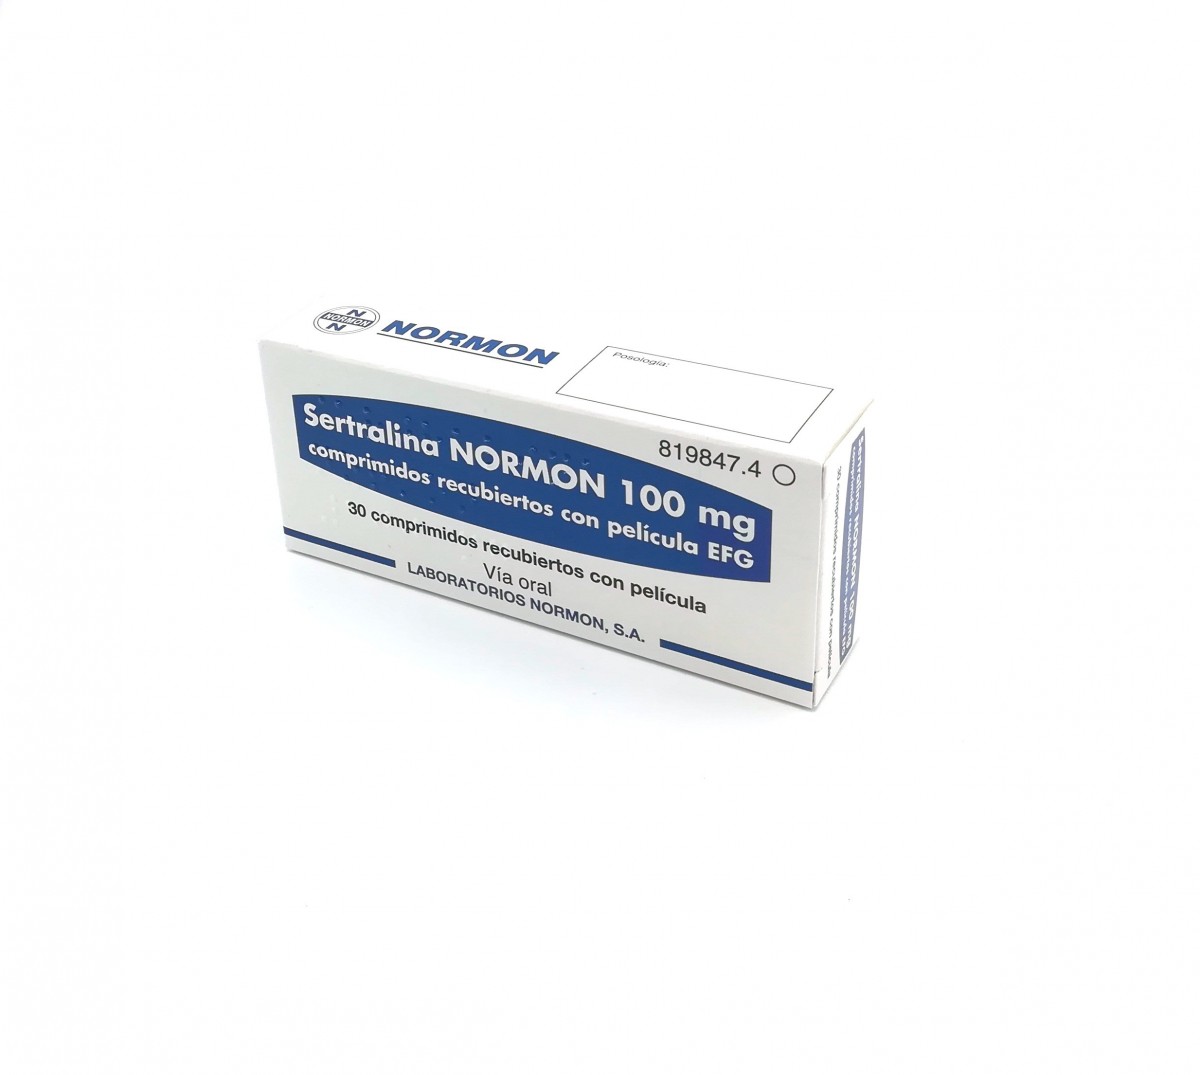 SERTRALINA NORMON 100 mg COMPRIMIDOS RECUBIERTOS CON PELICULA EFG,60 comprimidos fotografía del envase.